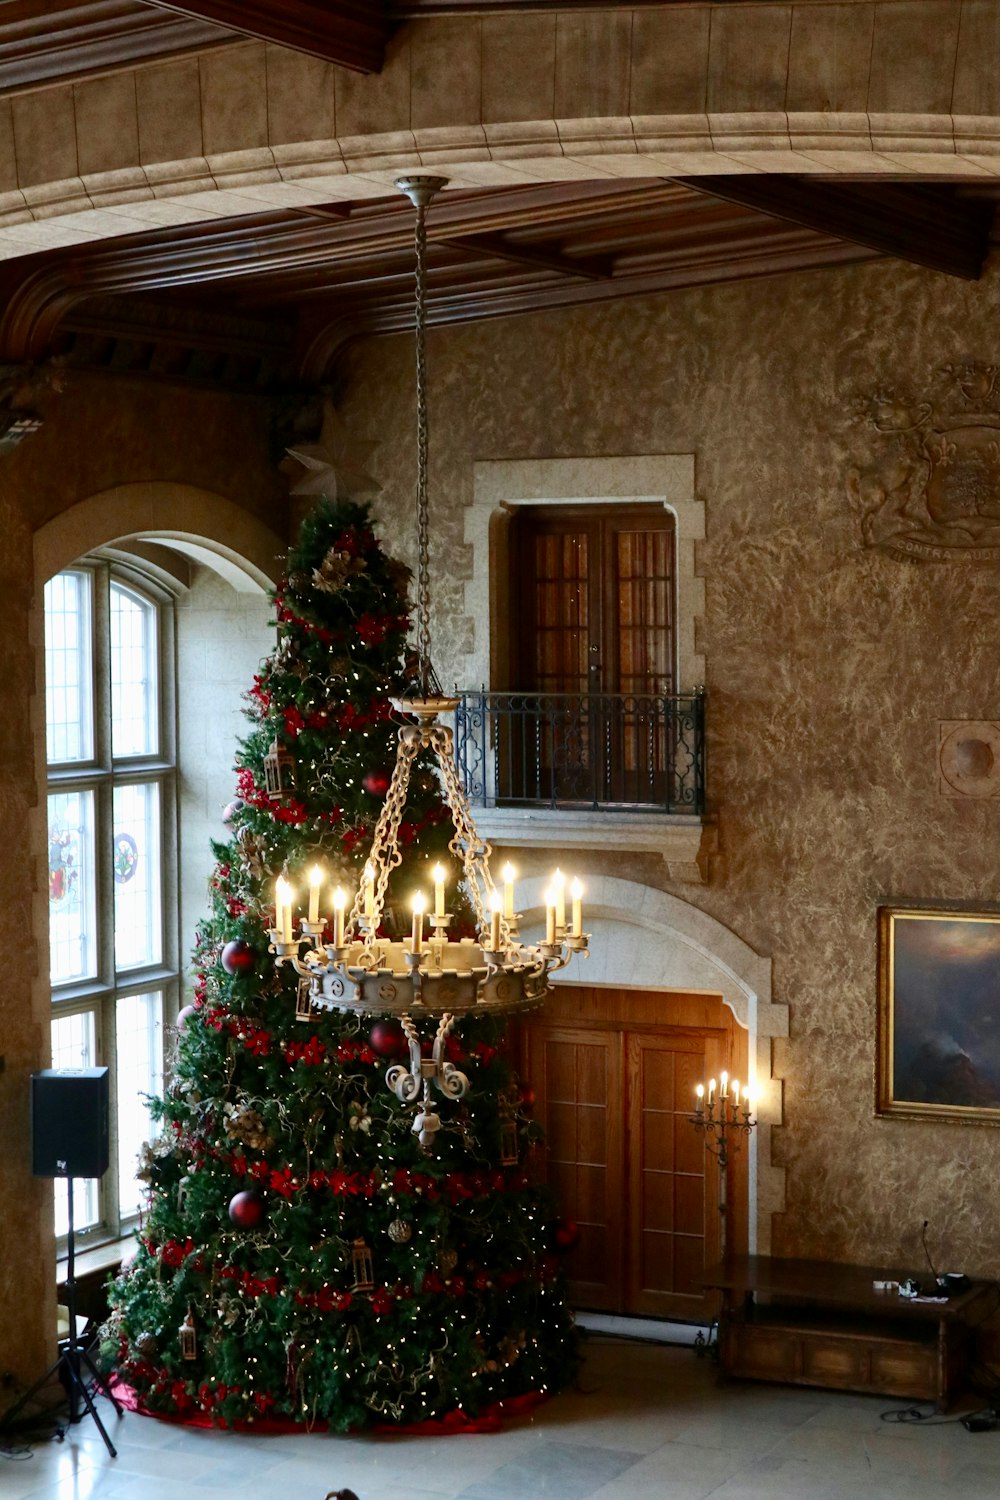 Albero di Natale accanto alle porte chiuse e vicino al lampadario acceso